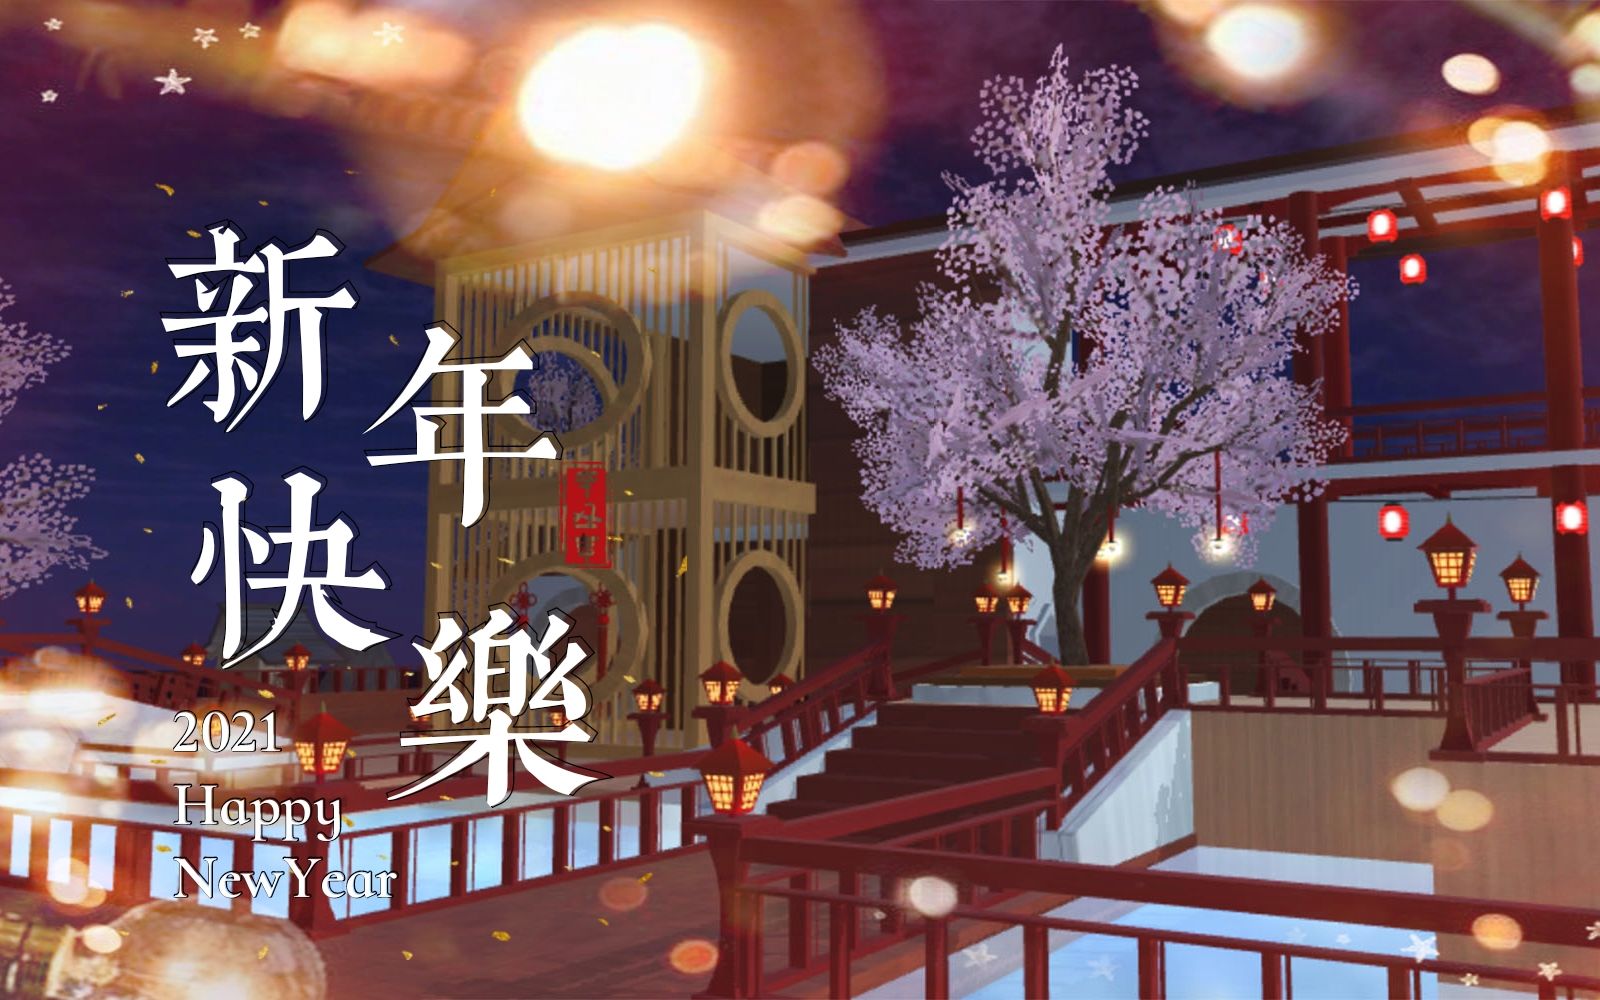 樱花校园模拟器新年快乐建了一套古风的房纸来庆祝新的一年的到来